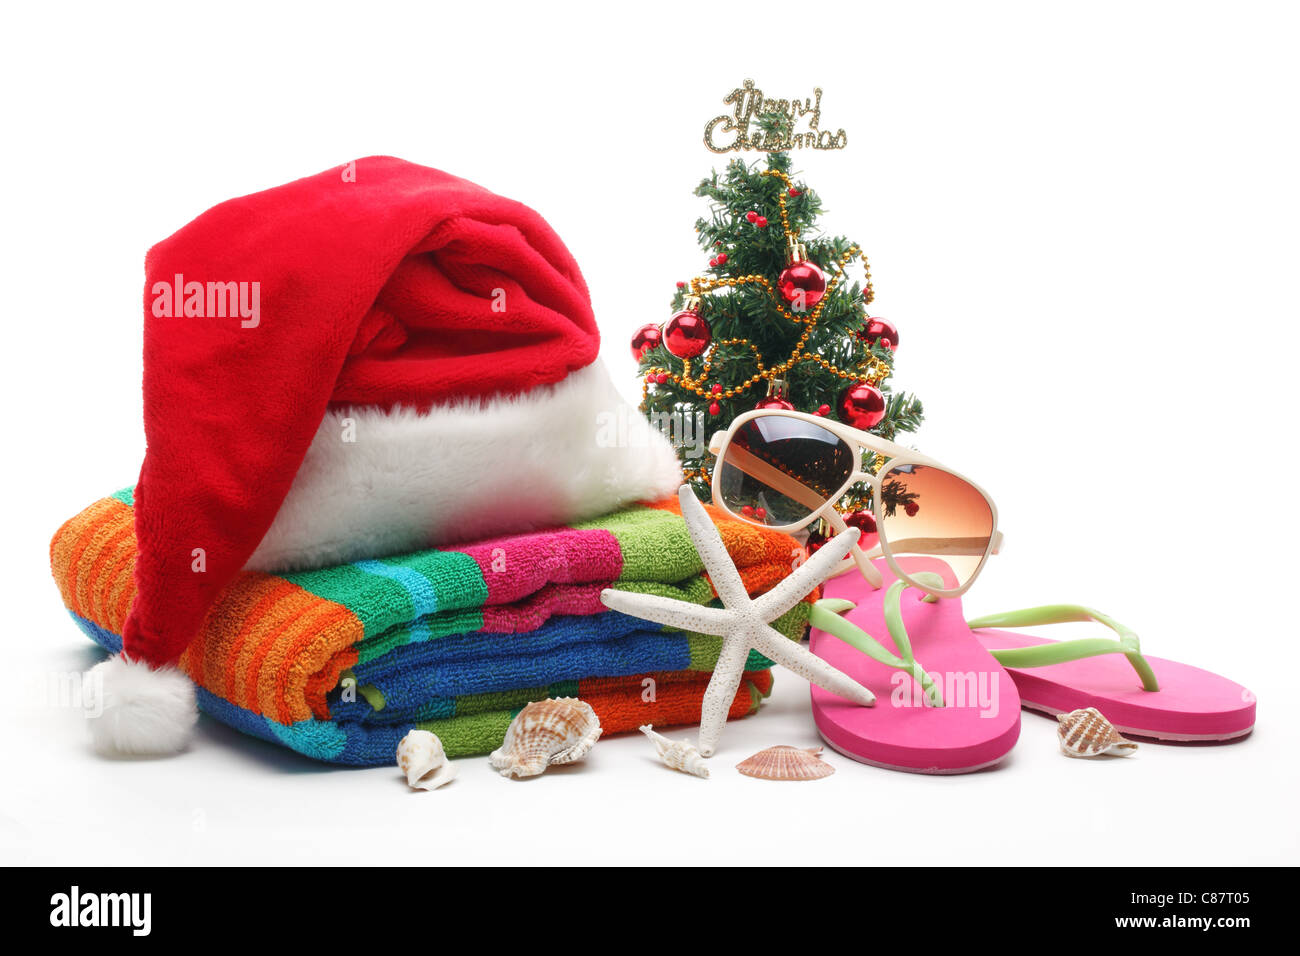 Santa Claus hat et l'arbre de Noël avec des accessoires de plage sur fond blanc. Banque D'Images